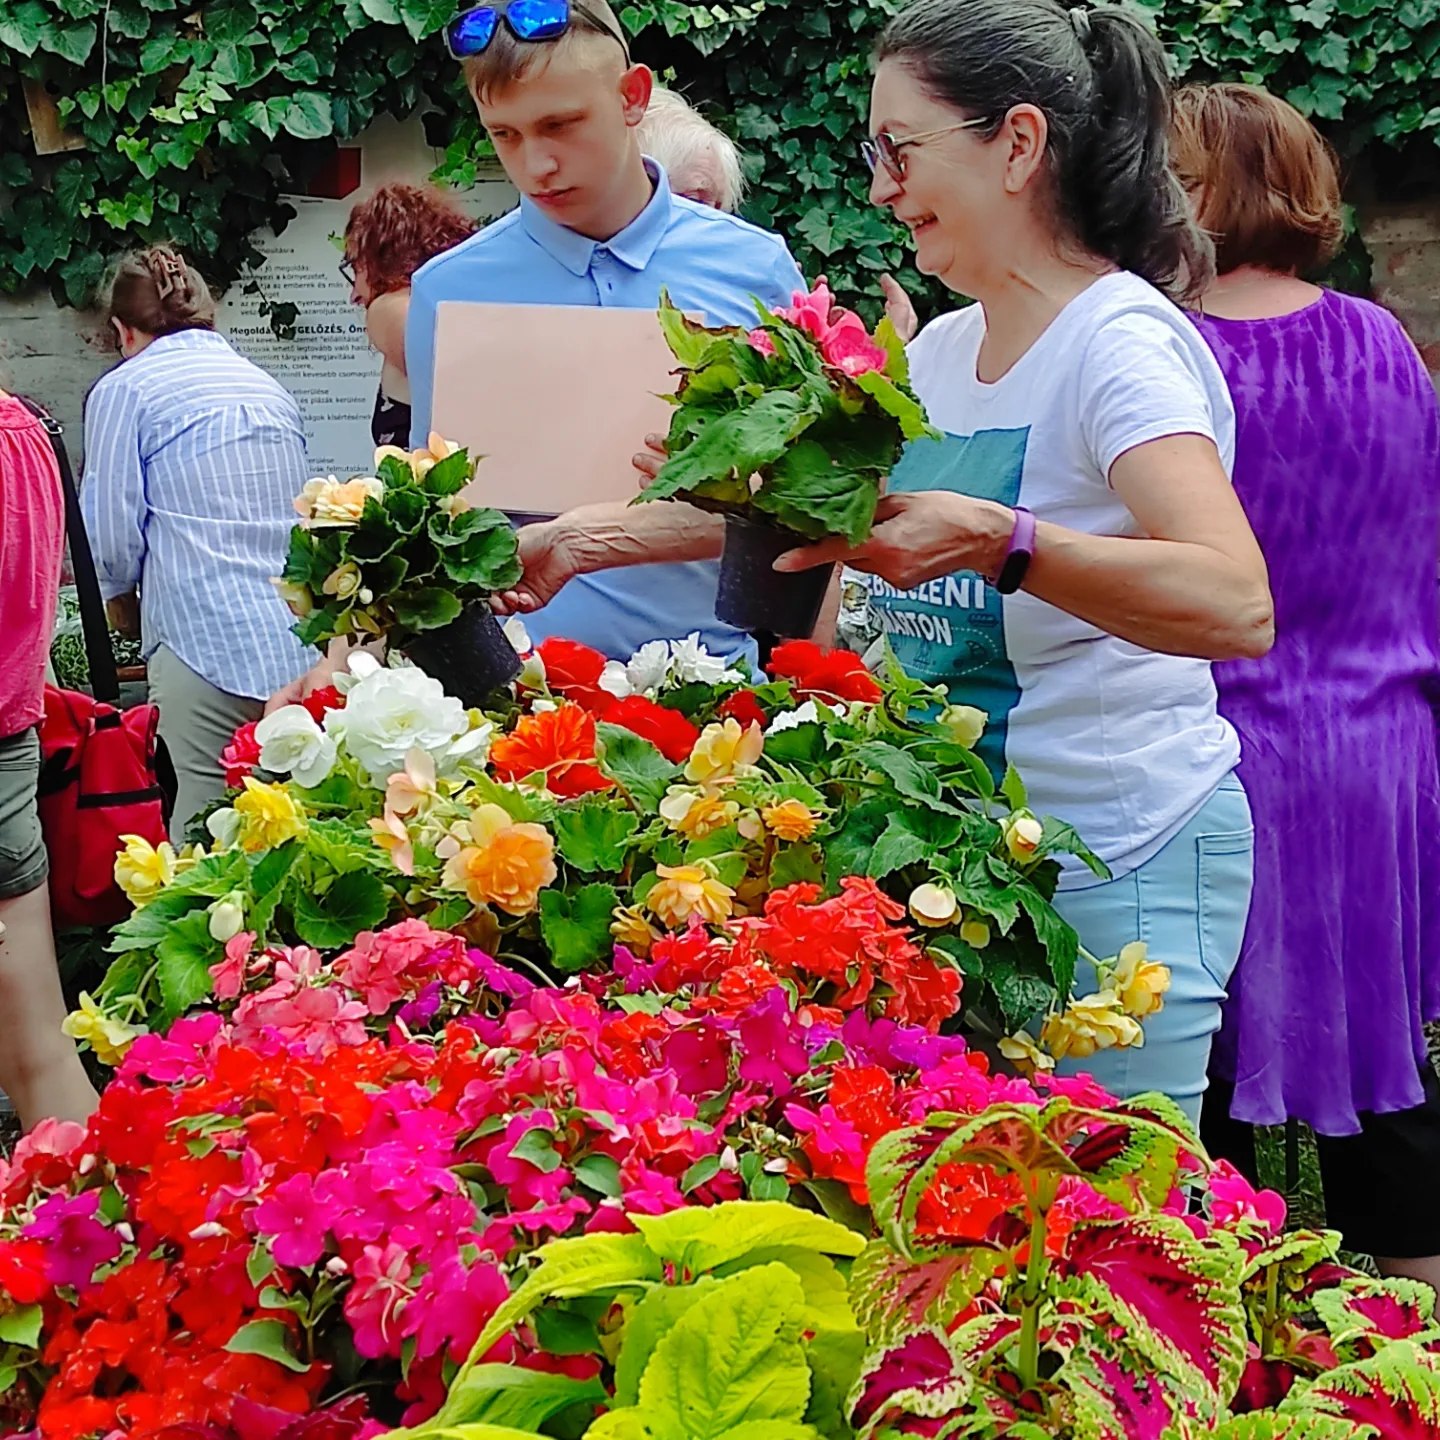 Egy nő és egy férfi színes cserepes virágokat választ ki egy szabadtéri növénypiacon. Az asztal tele van élénk virágokkal, piros, rózsaszín, sárga és fehér árnyalatokban. A háttérben más vásárlók és buja növényzet látható.